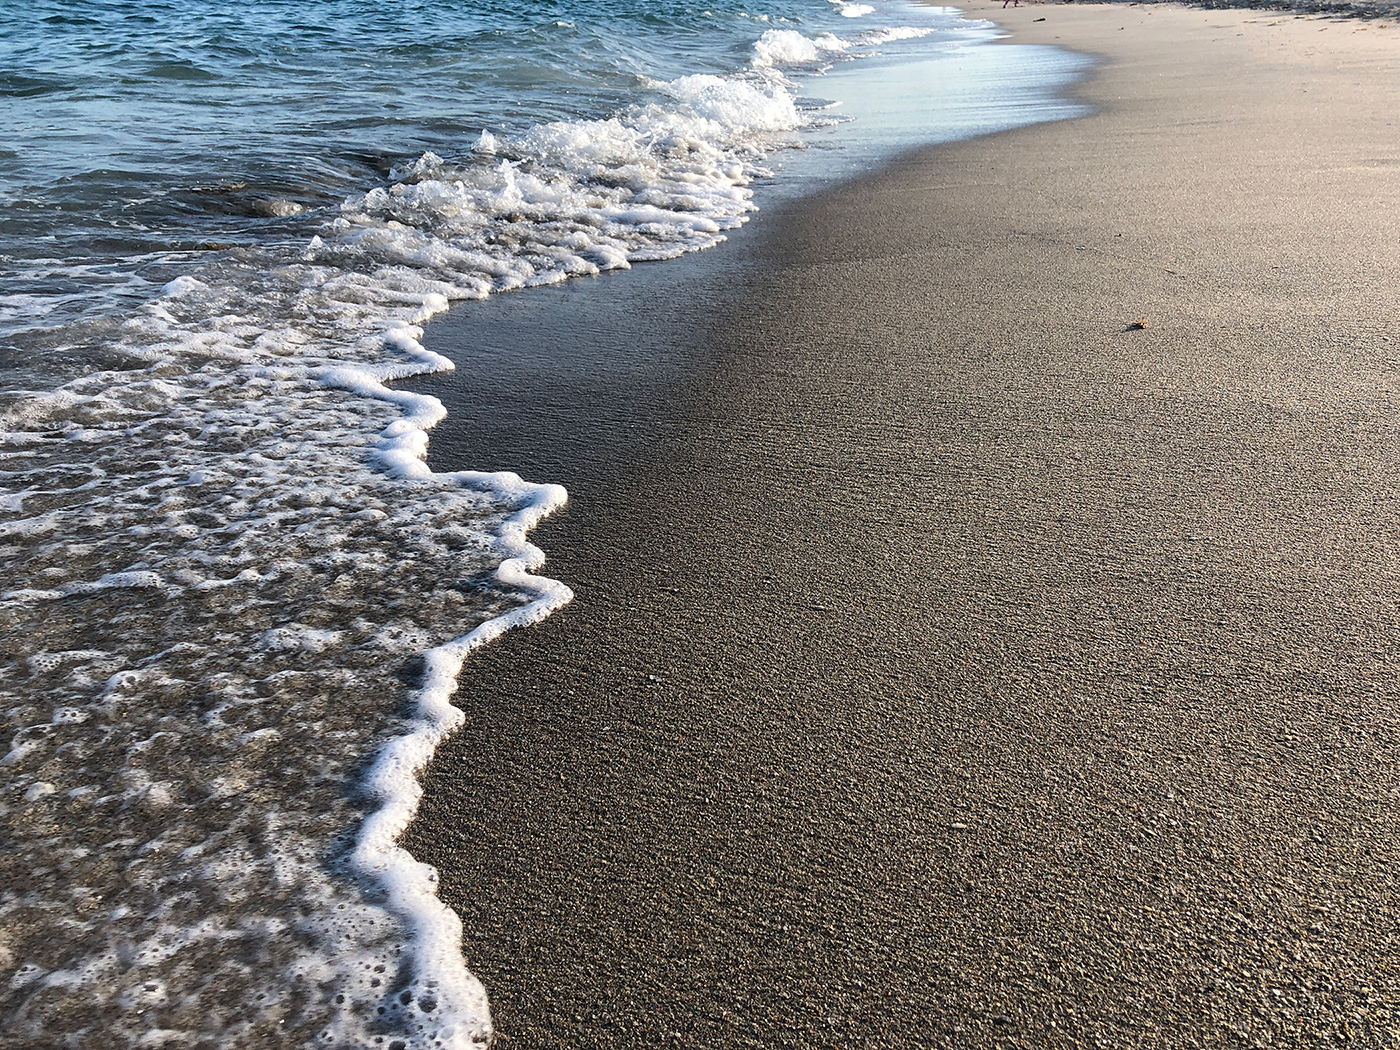 Waves meet sand